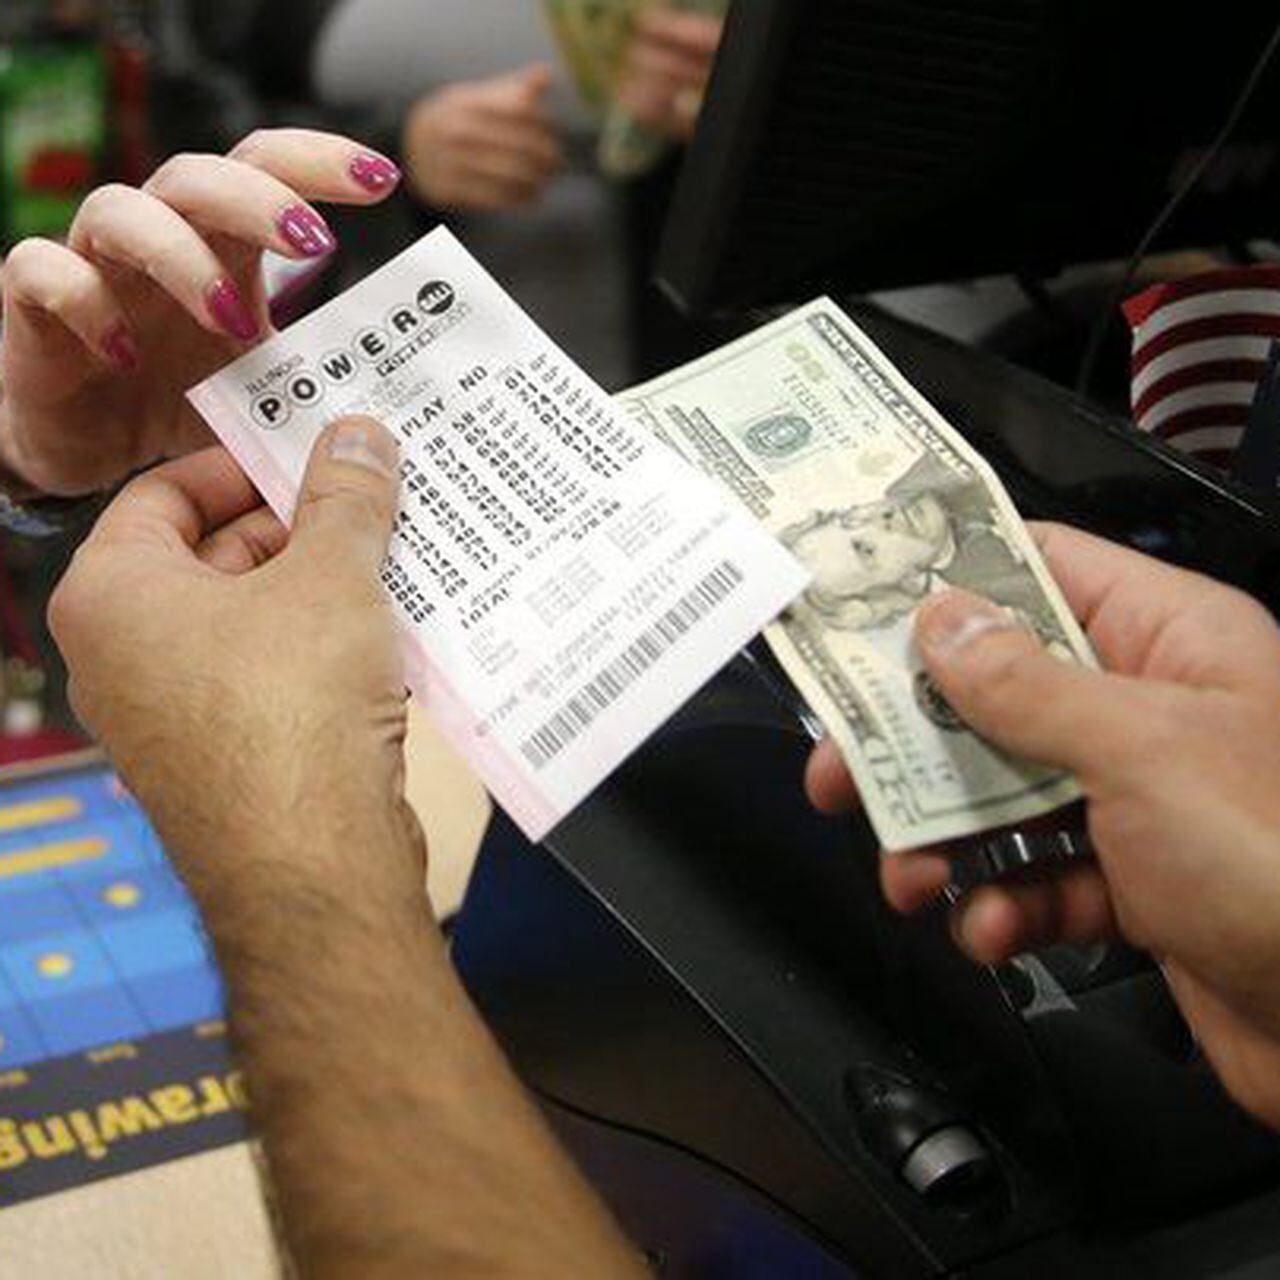 Una mujer se lleva 50.000 dólares del rasca y gana en la misma tienda donde  su padre ganó la lotería